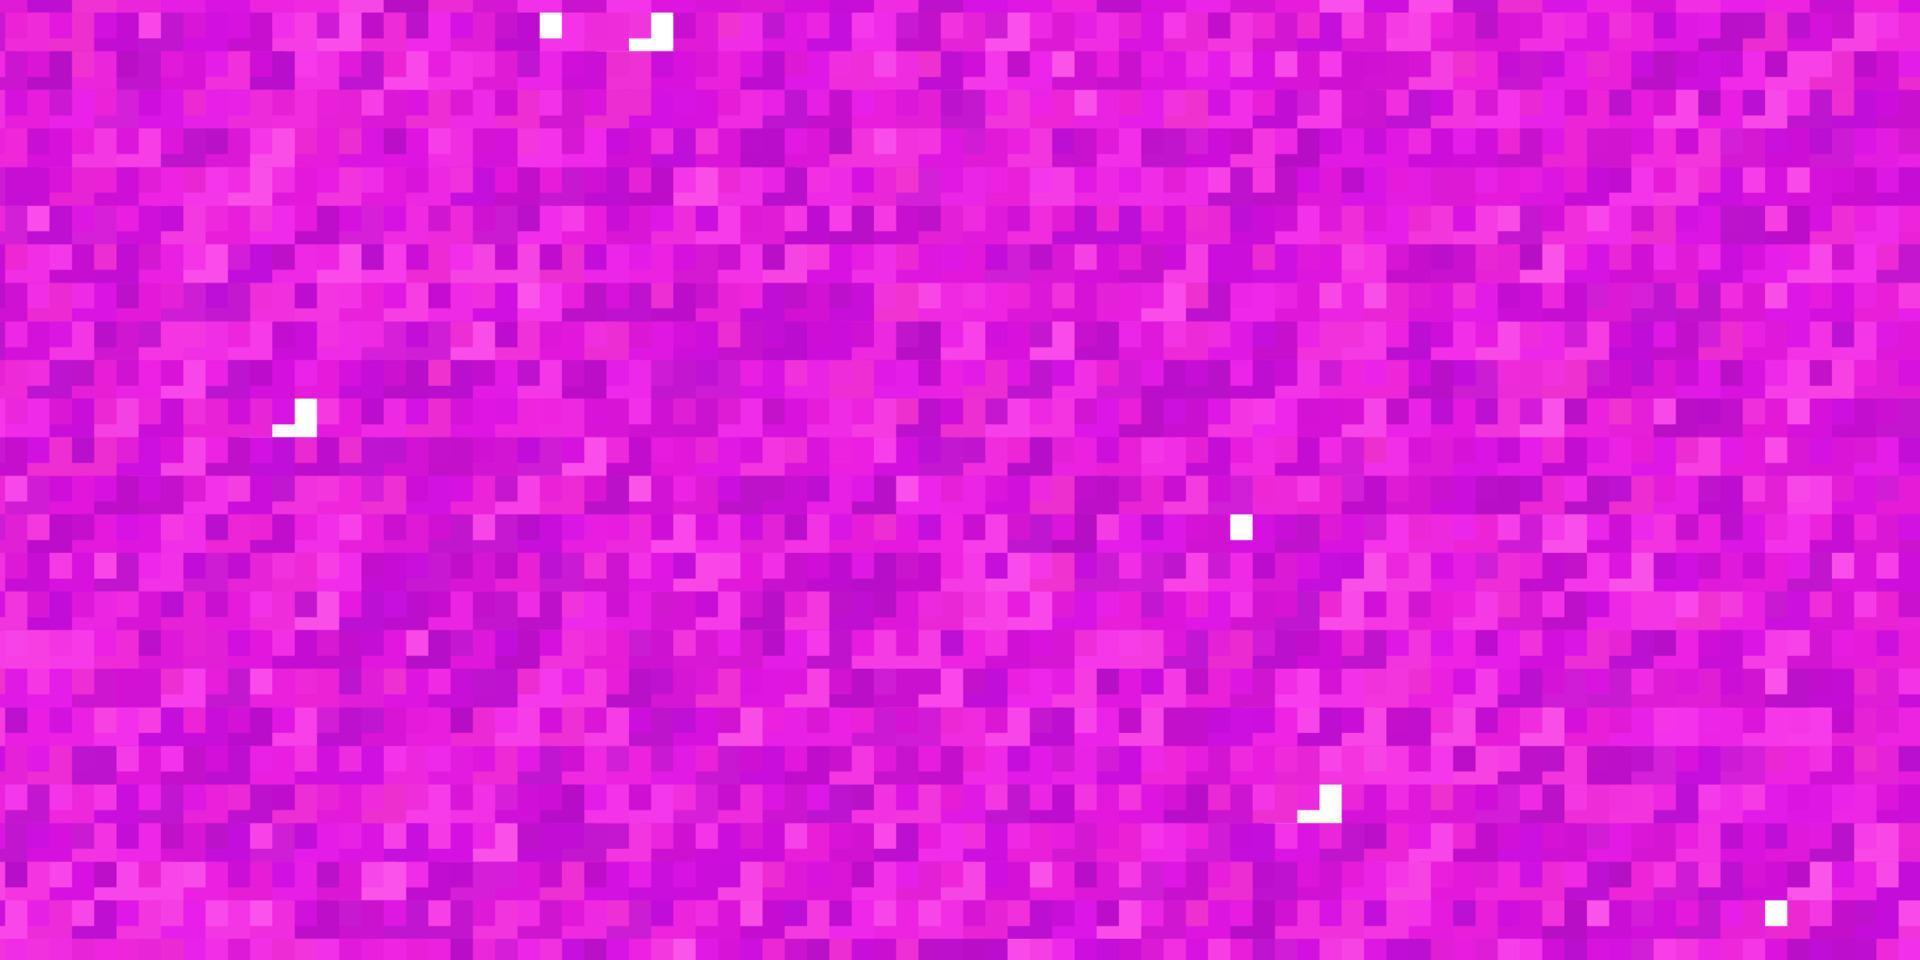 fundo vector rosa claro com retângulos.